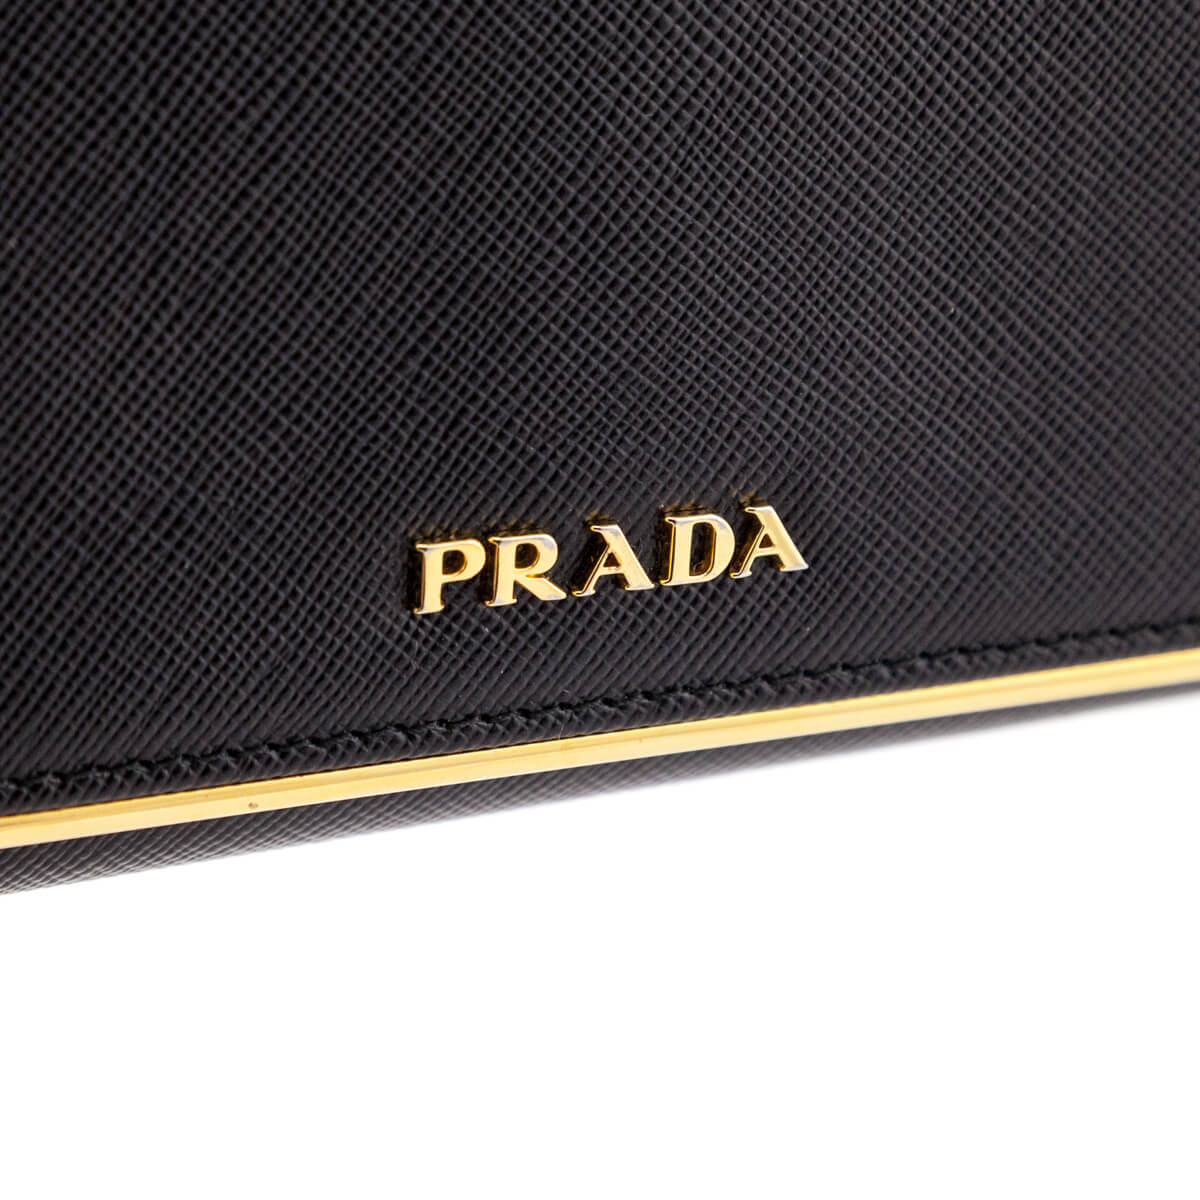 PRADA Saffiano Metal Bar Continental Flap Wallet Black 1154742